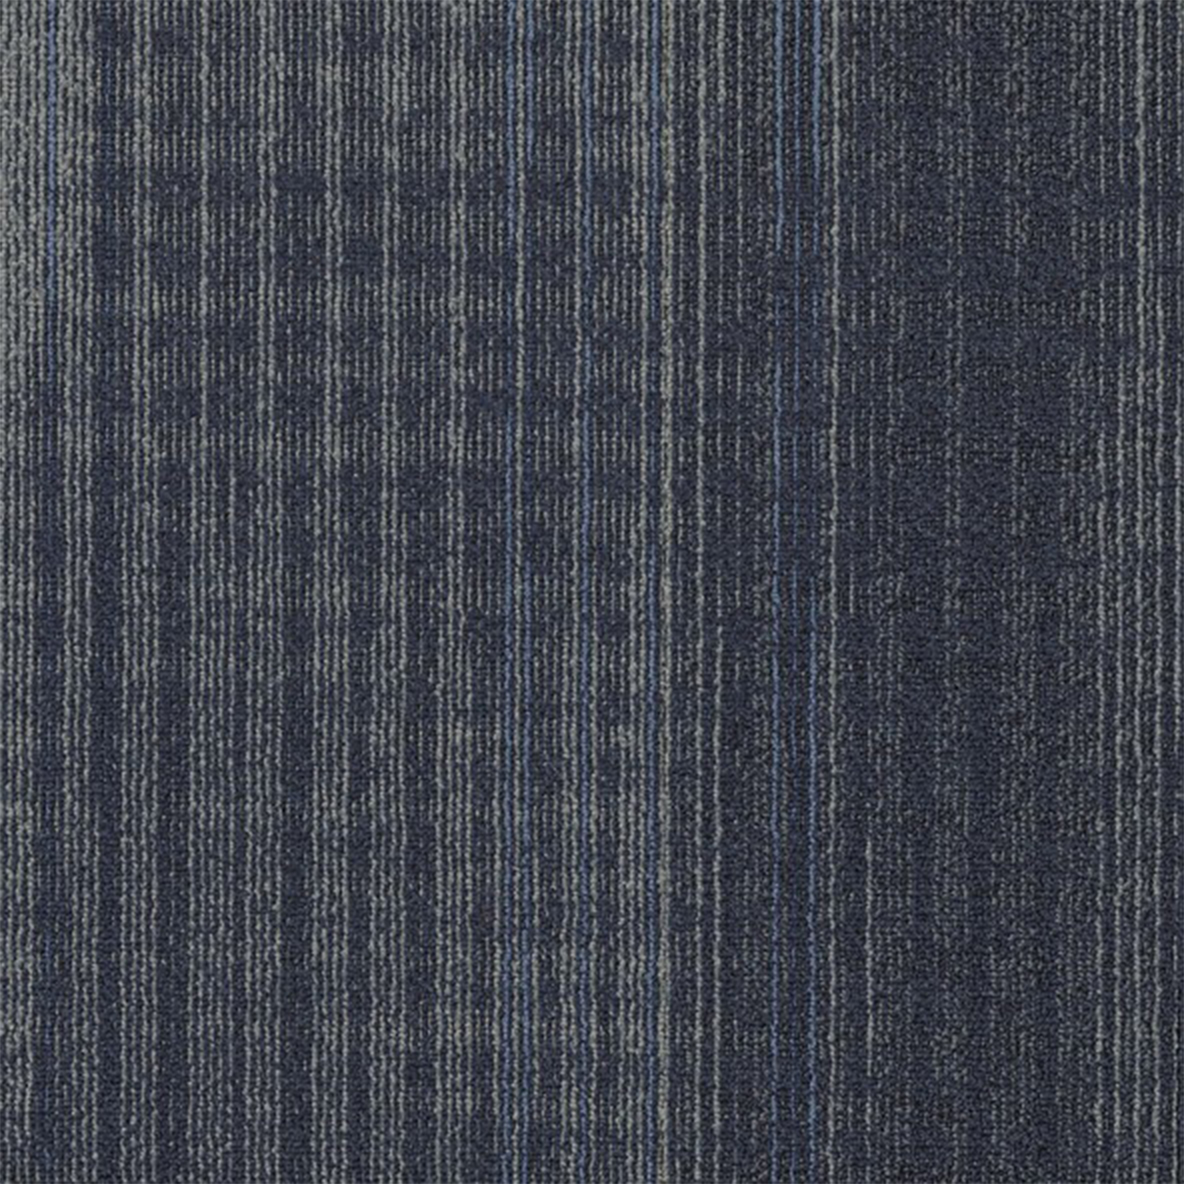 Sapphire color close up Nexus Commercial Carpet Tile .42 Inch x 50x50 cm per Tile